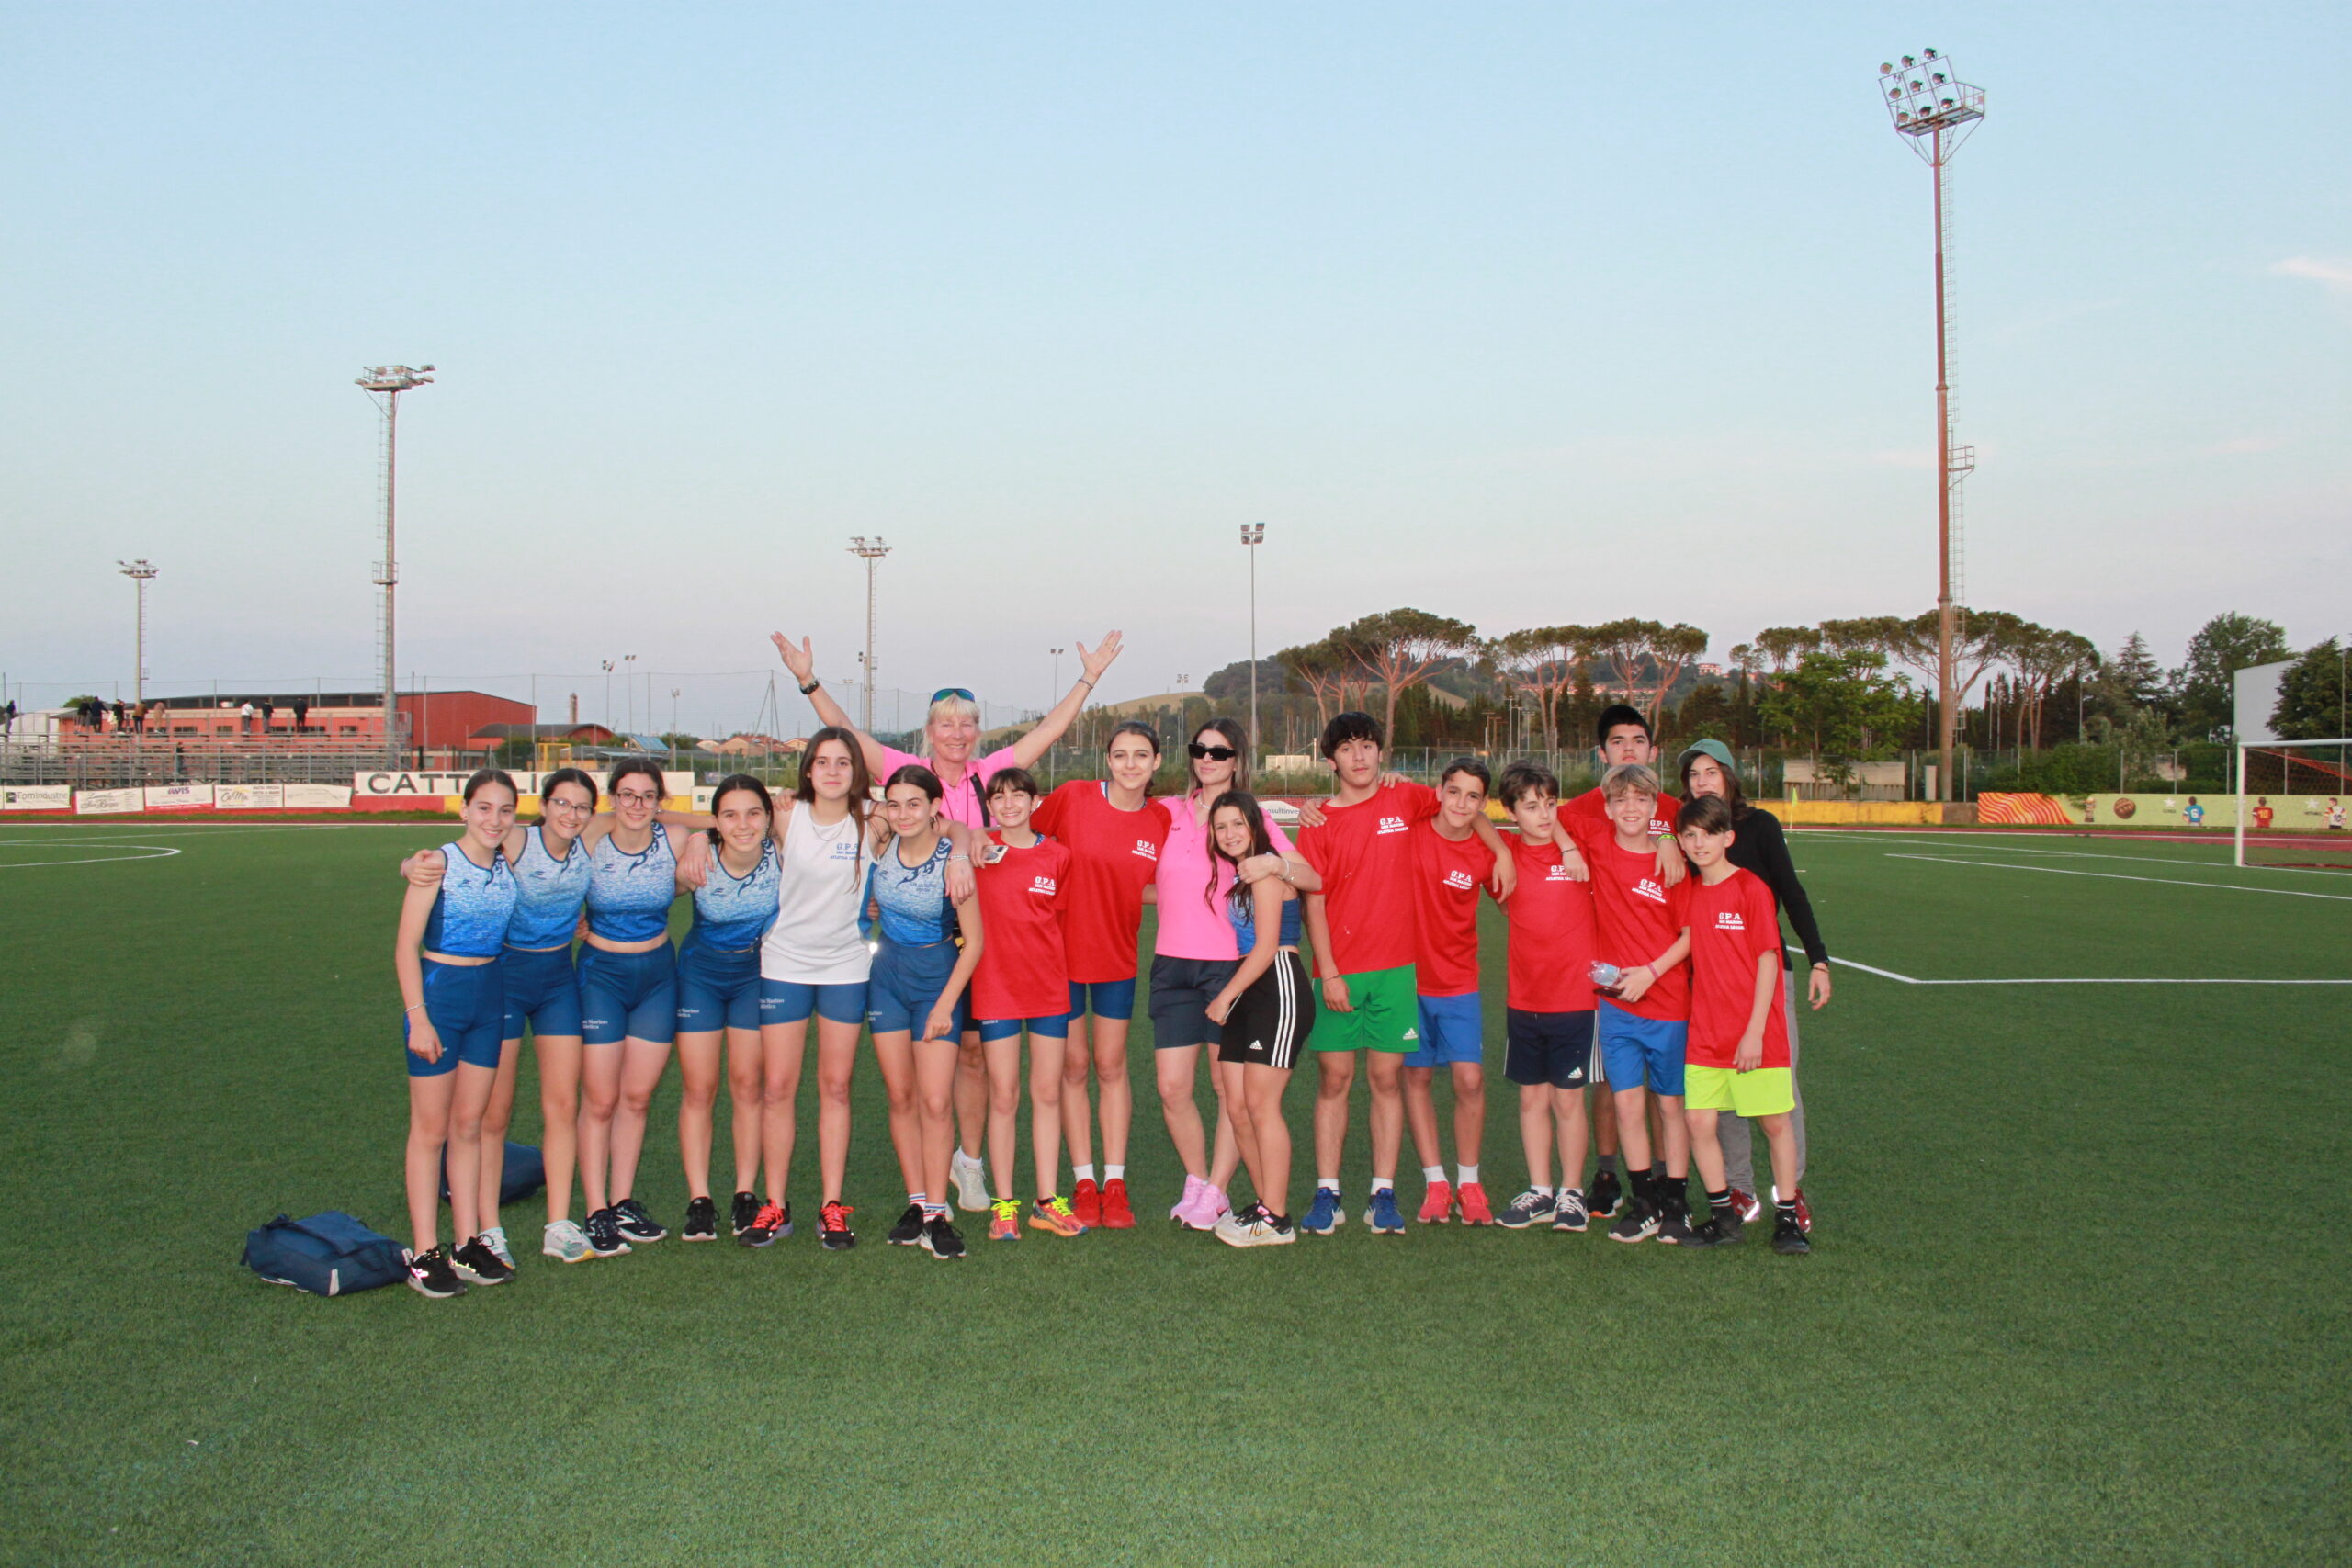 Atletica: Le ragazze del Gpa San Marino vincono il campionato provinciale prove multiple